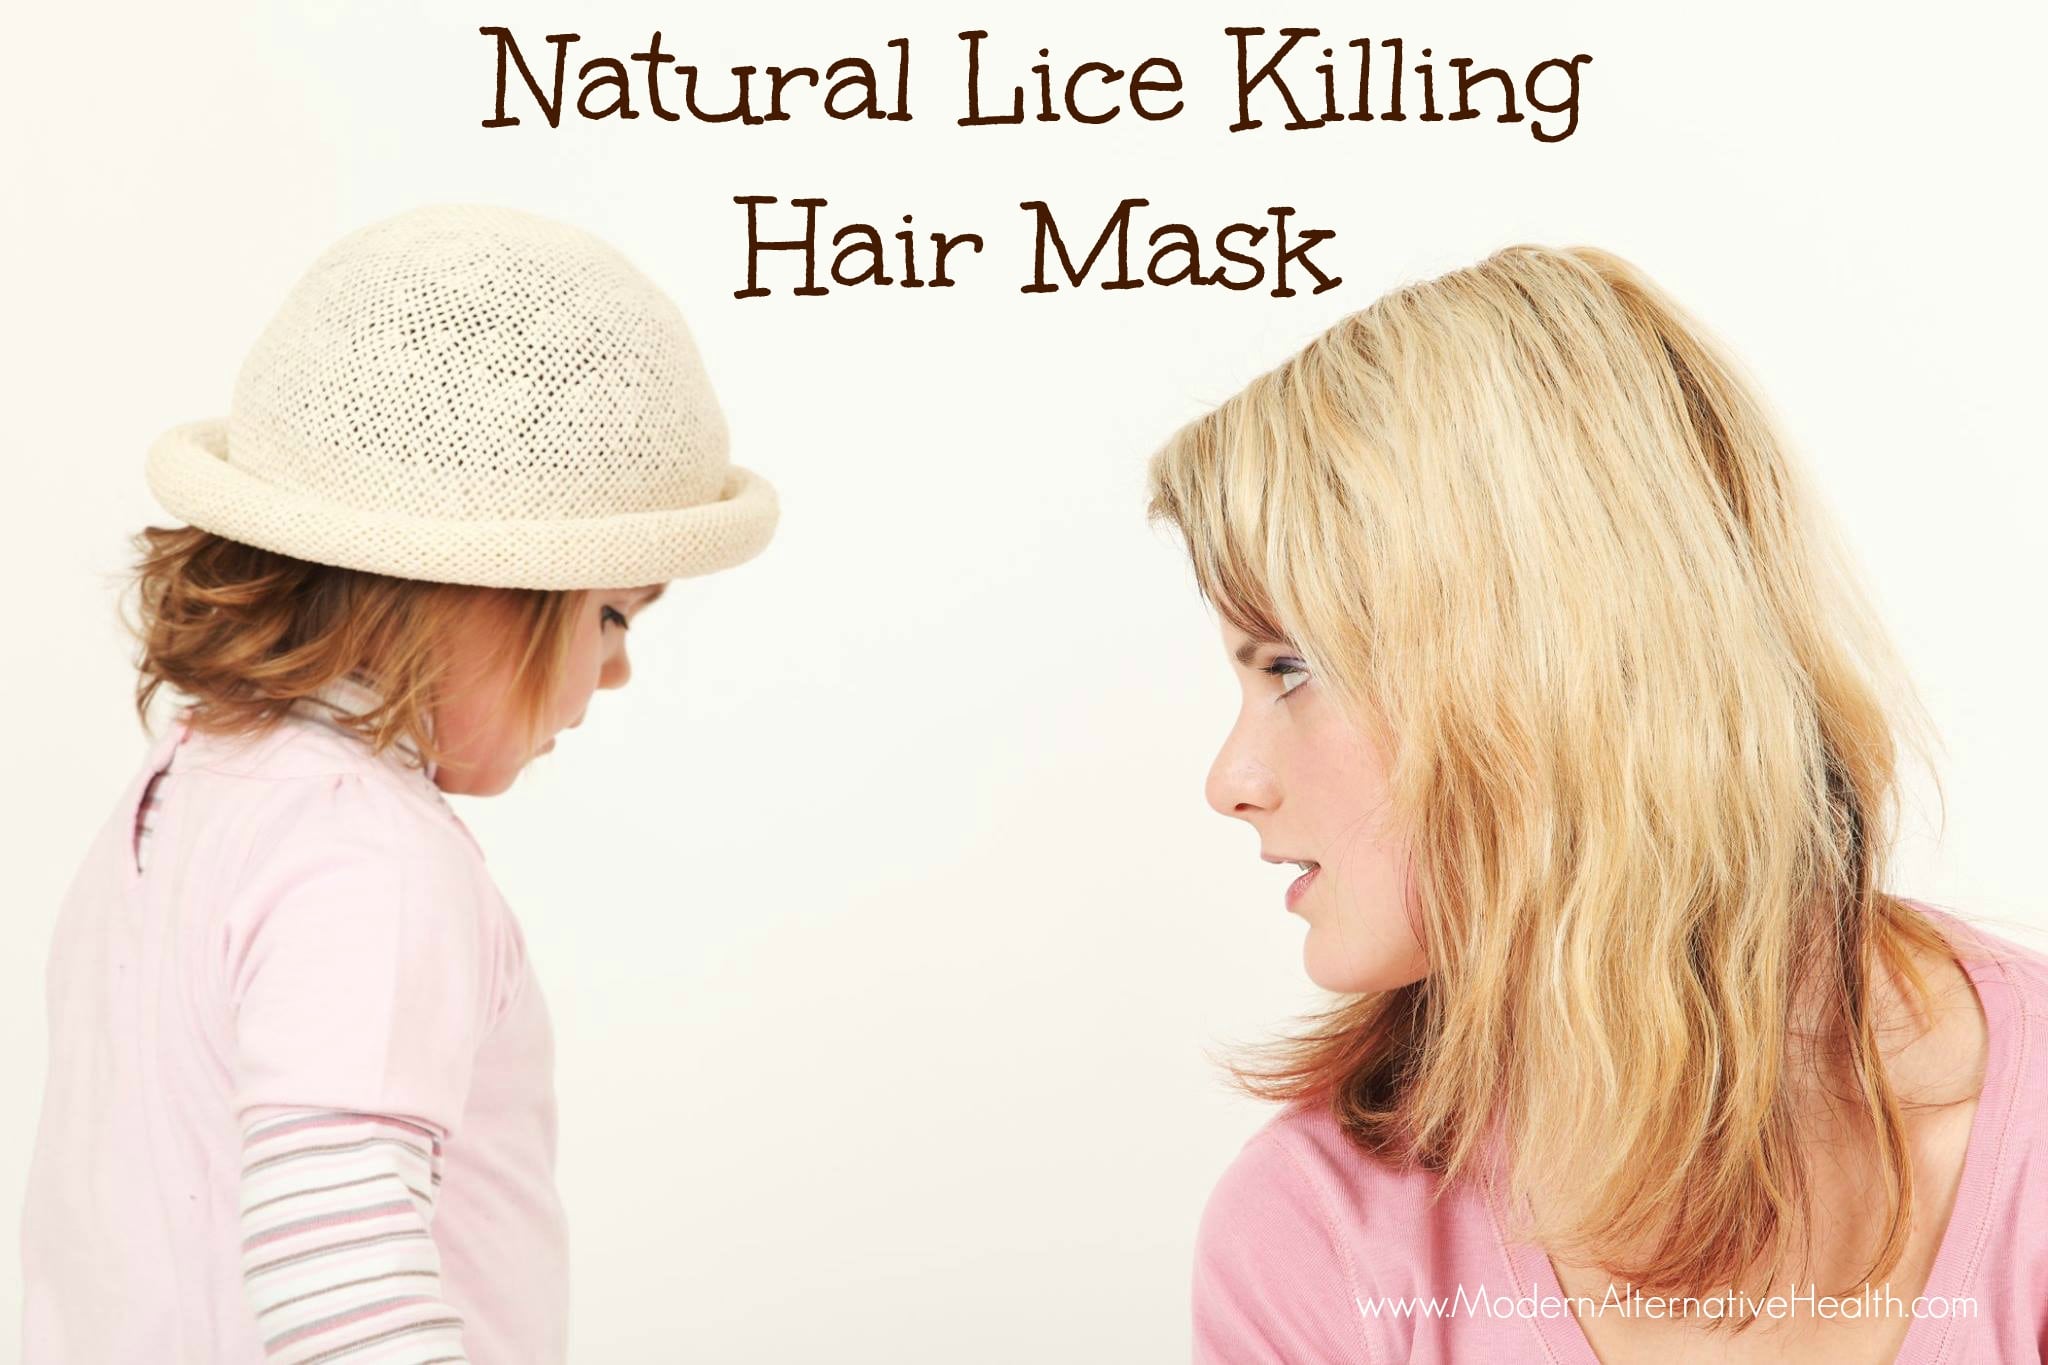 Natural Lice Killing Hair Mask